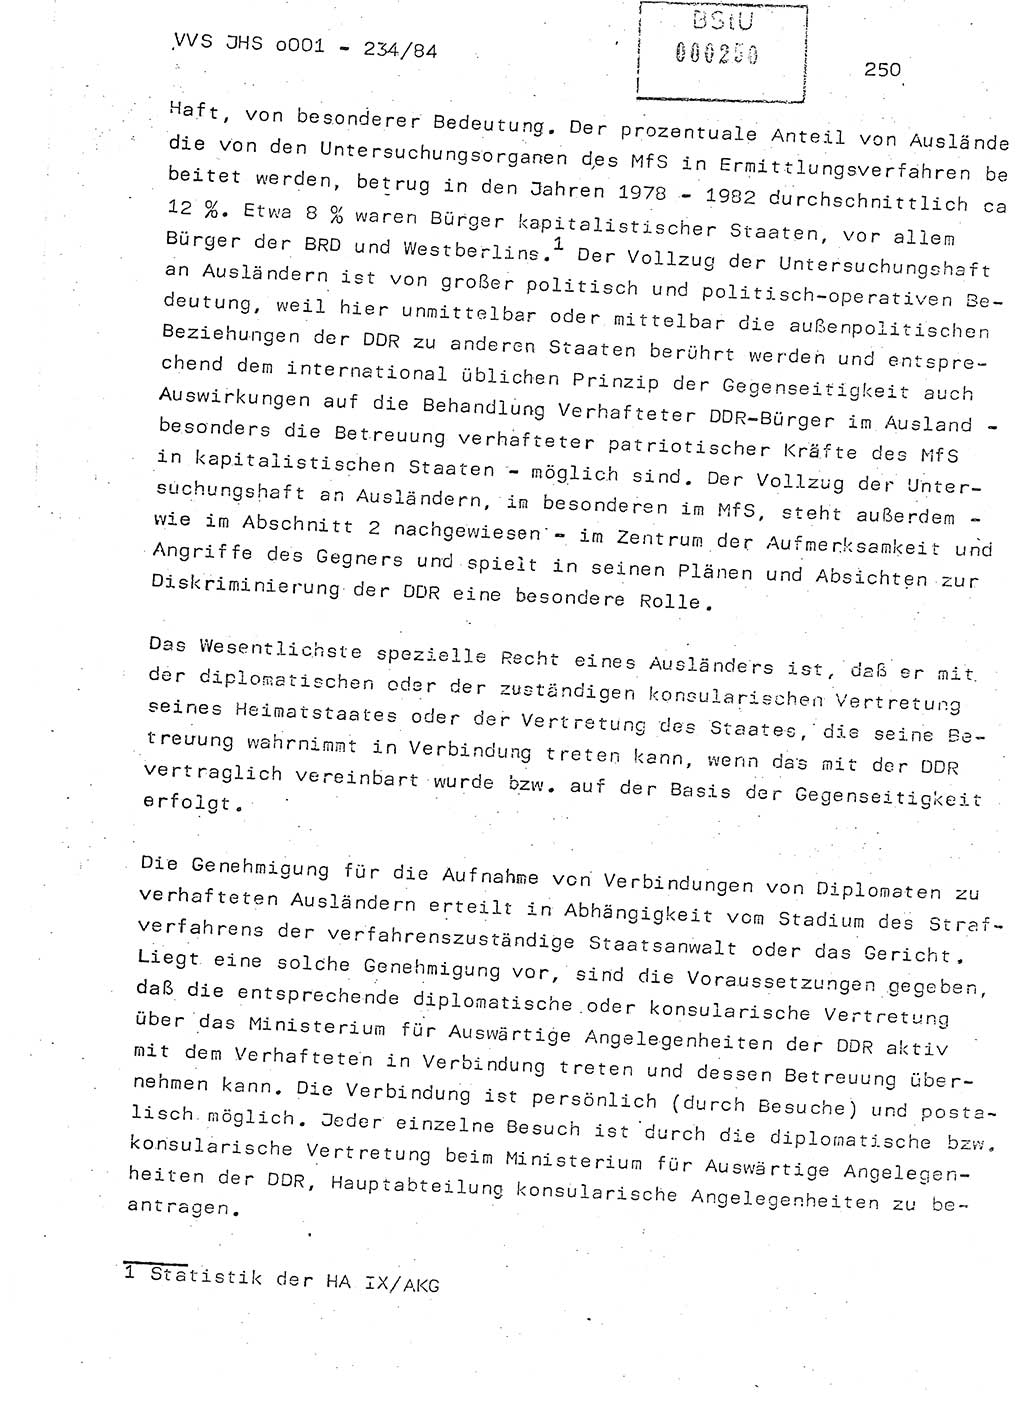 Dissertation Oberst Siegfried Rataizick (Abt. ⅩⅣ), Oberstleutnant Volkmar Heinz (Abt. ⅩⅣ), Oberstleutnant Werner Stein (HA Ⅸ), Hauptmann Heinz Conrad (JHS), Ministerium für Staatssicherheit (MfS) [Deutsche Demokratische Republik (DDR)], Juristische Hochschule (JHS), Vertrauliche Verschlußsache (VVS) o001-234/84, Potsdam 1984, Seite 250 (Diss. MfS DDR JHS VVS o001-234/84 1984, S. 250)